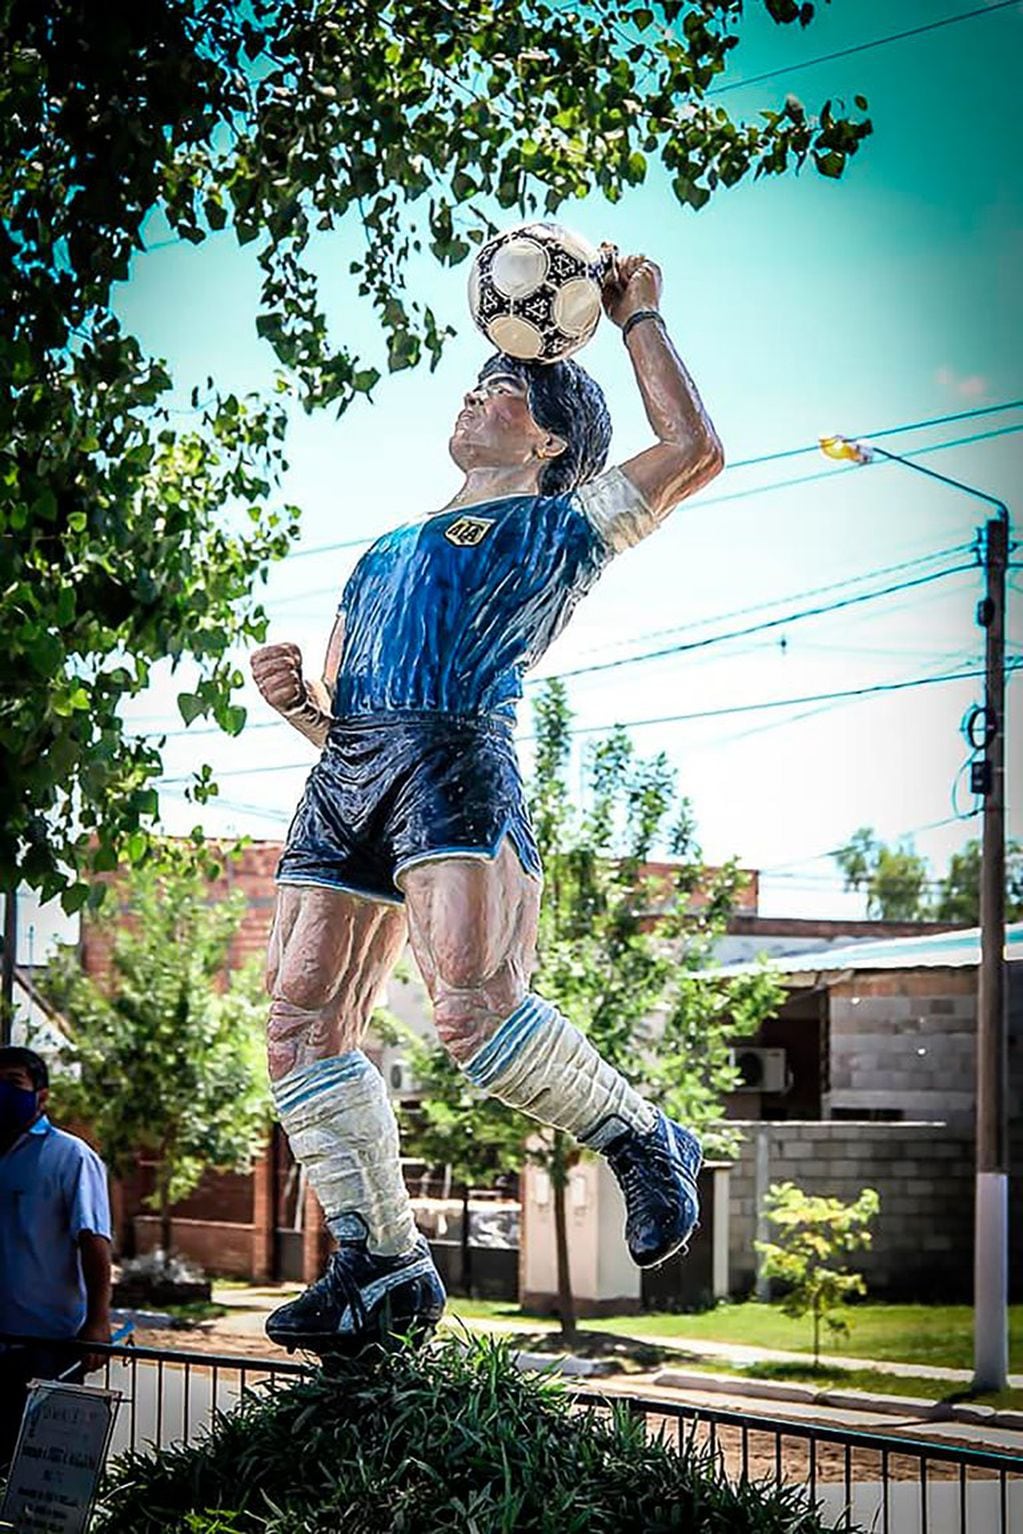 Homenajearon a Diego Maradona en Famaillá con una escultura.